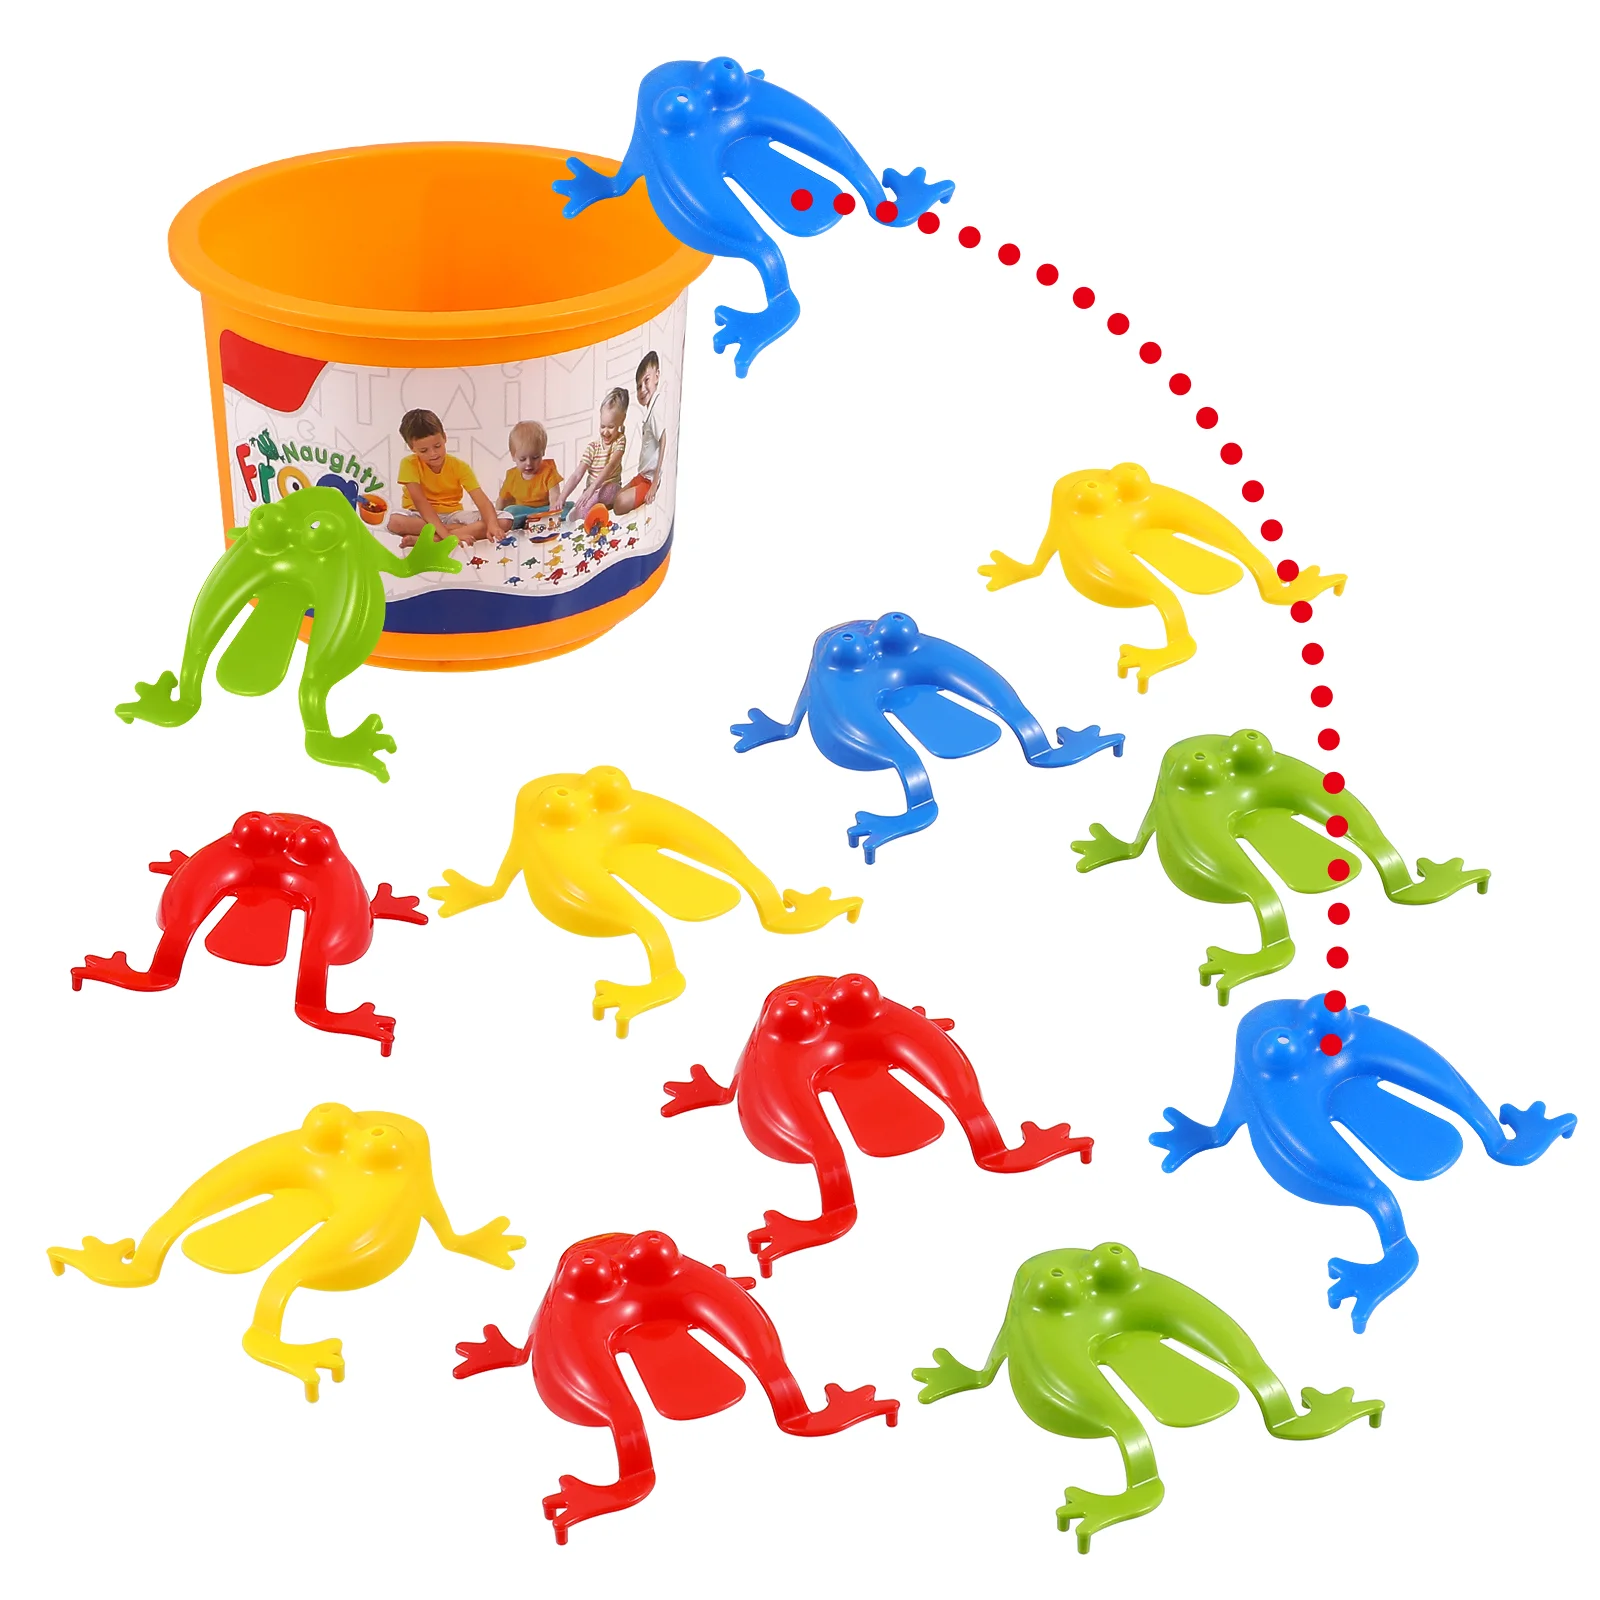 

TOYANDONA 1 набор забавные прыгающие игрушки Leaping развивающая игрушка вечерние сувениры для детей приз подарок с ведром